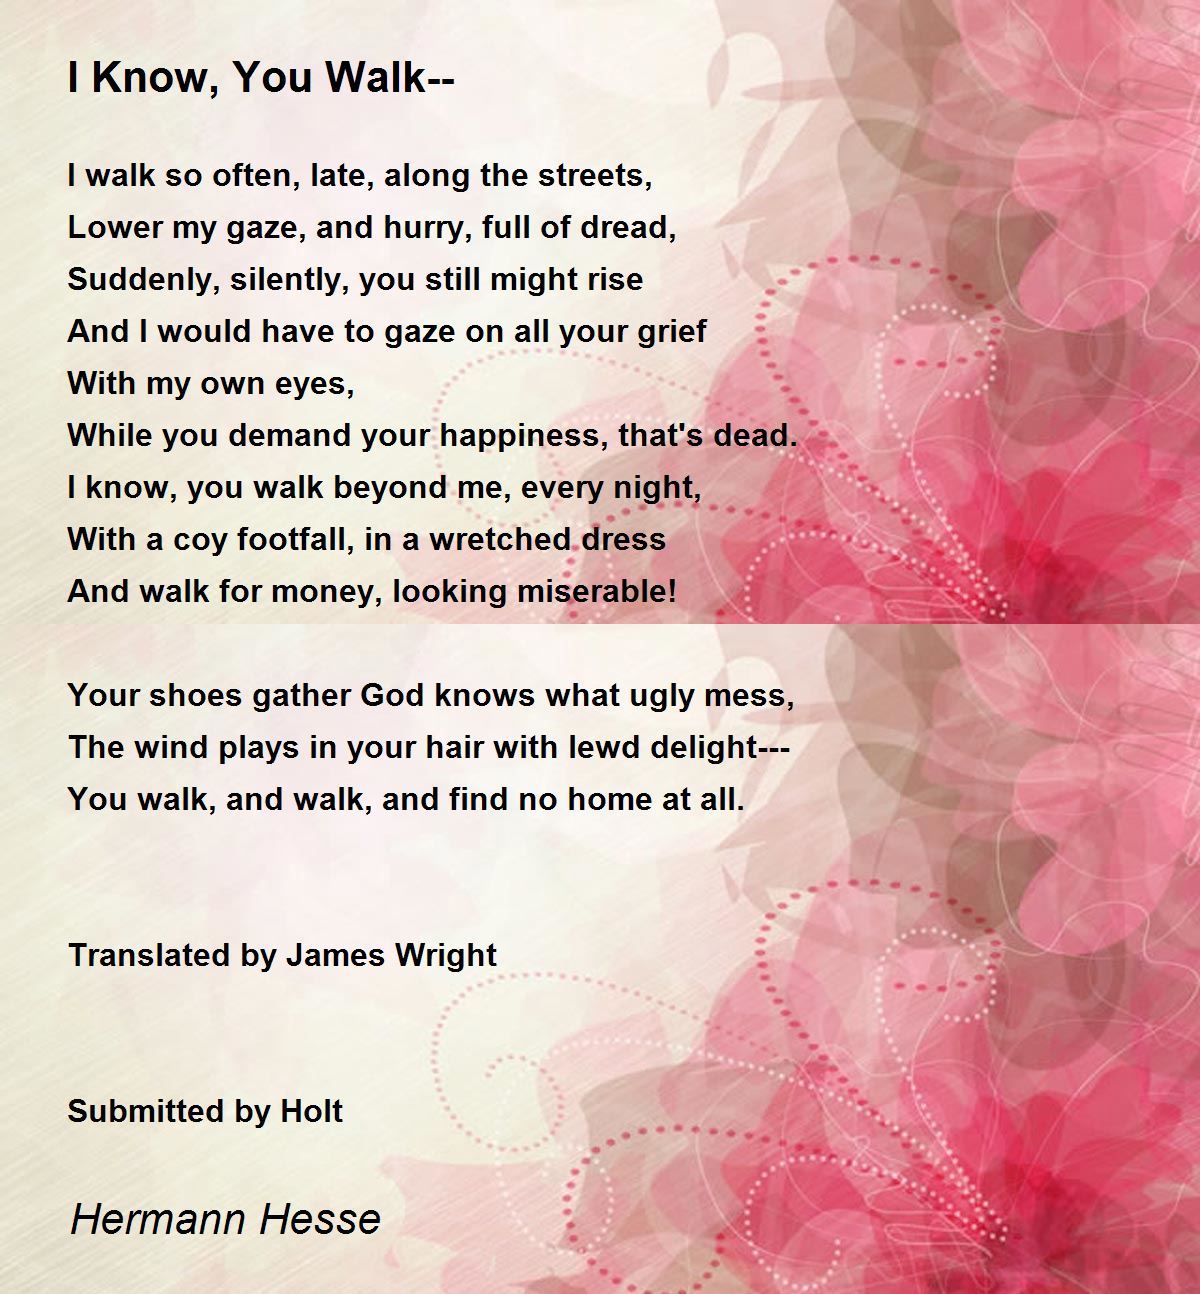 I Know, You Walk-- Poem by Hermann Hesse - Poem Hunter